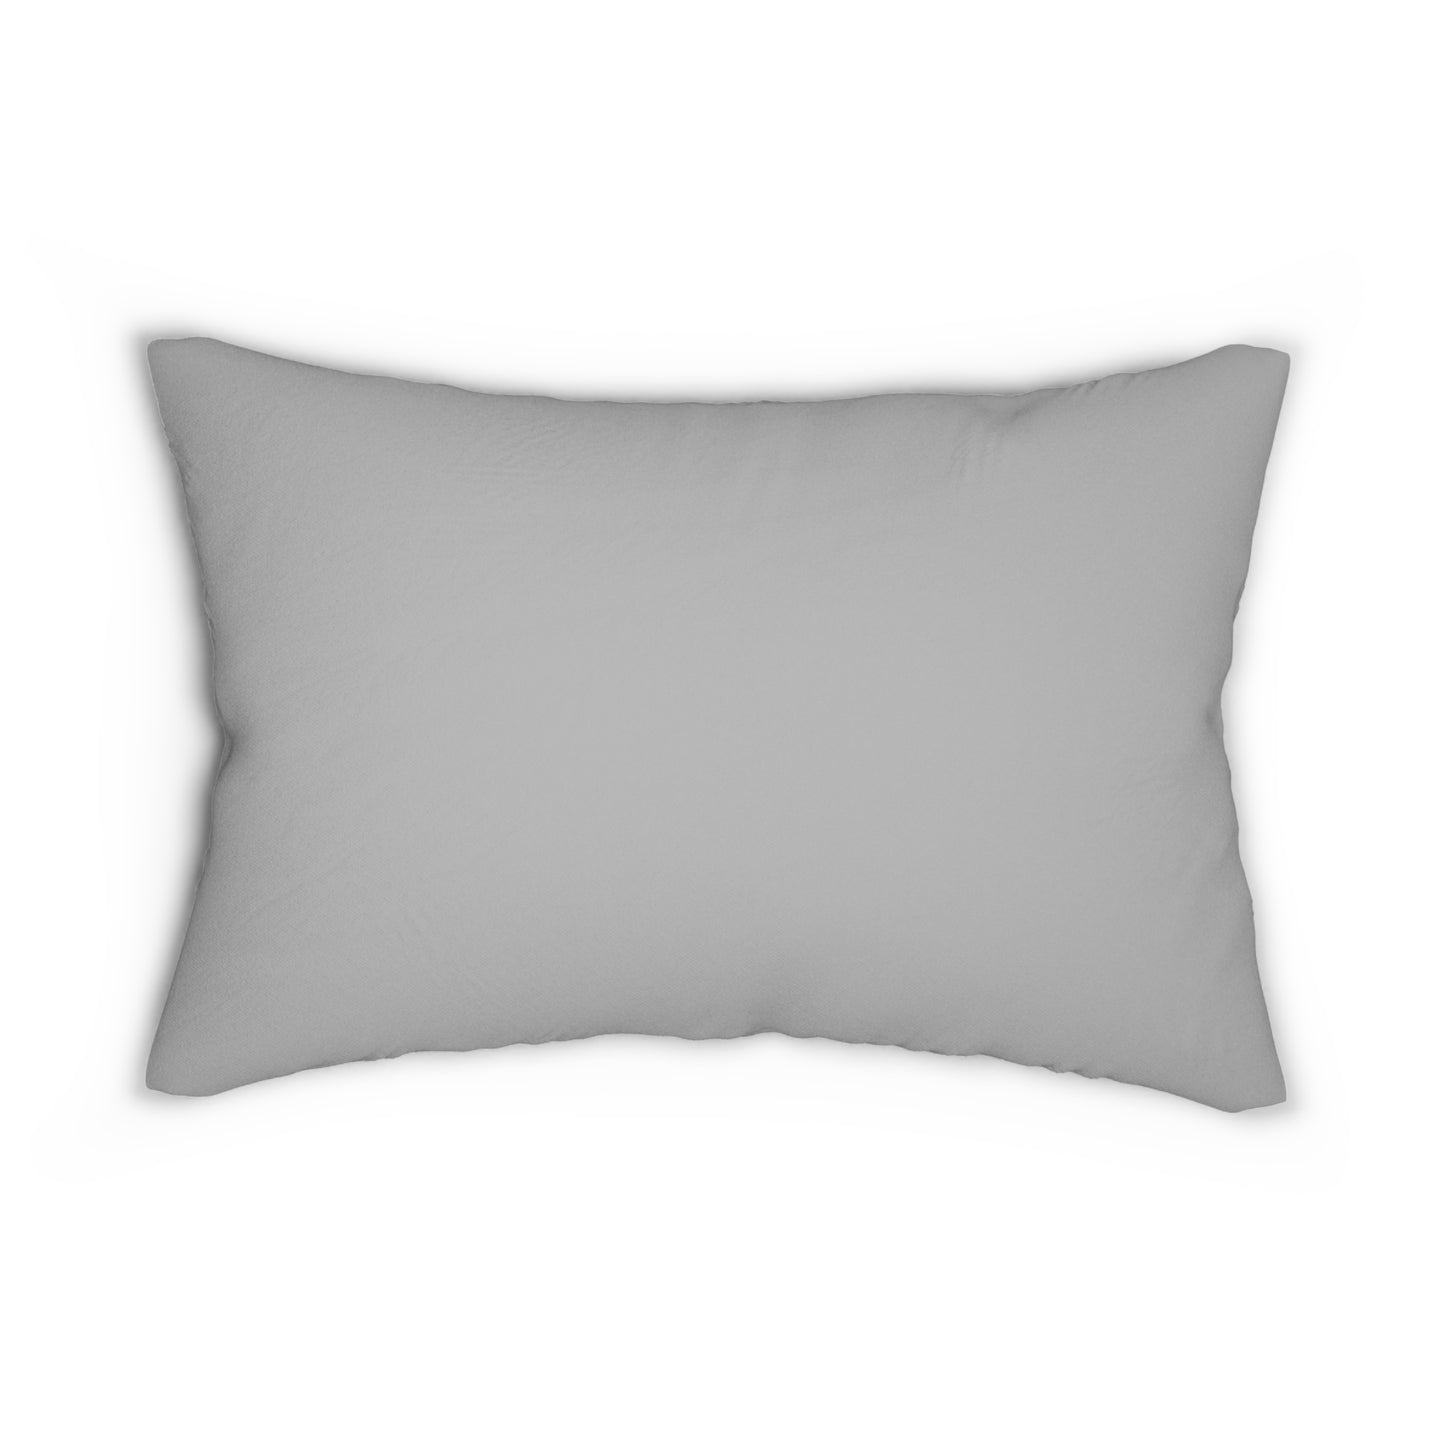 Peaceful Kitty Lumbar Pillow: Polyester; 20" x 14"; Grey